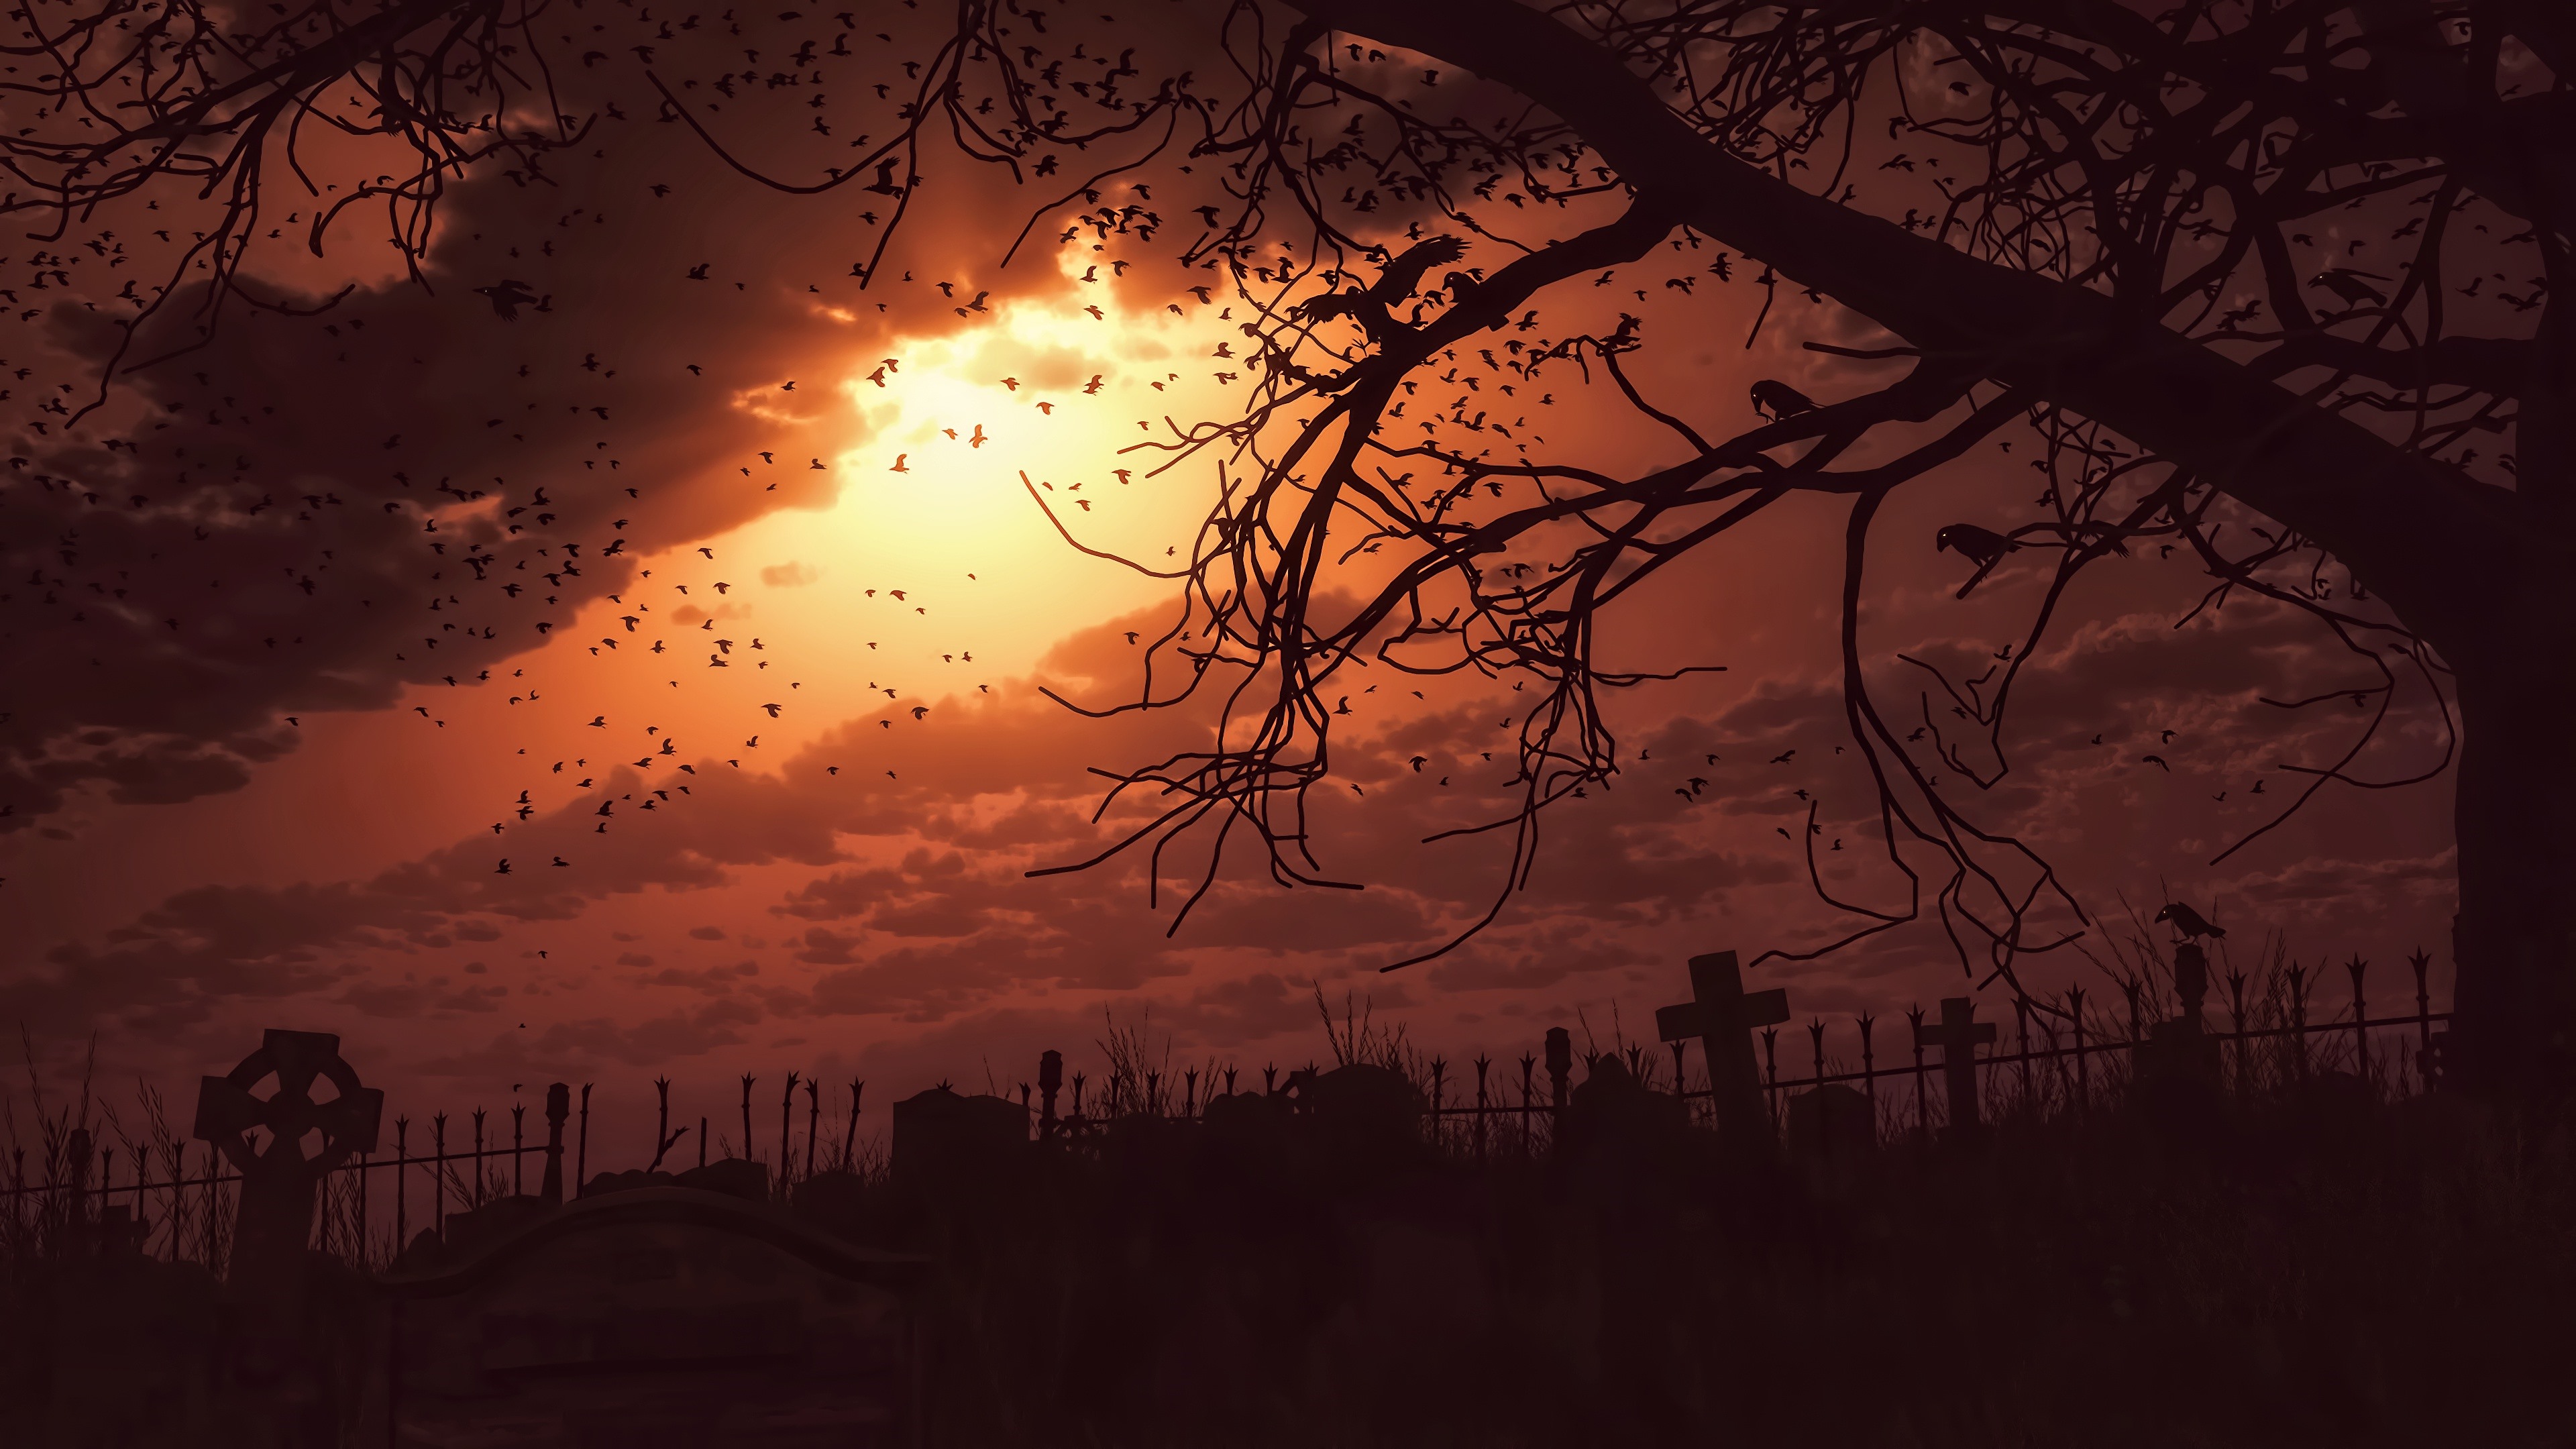 Wallpaper Night, Darkness, Cemetery, Crows, Terror, - Cemetery Fan Art - HD Wallpaper 